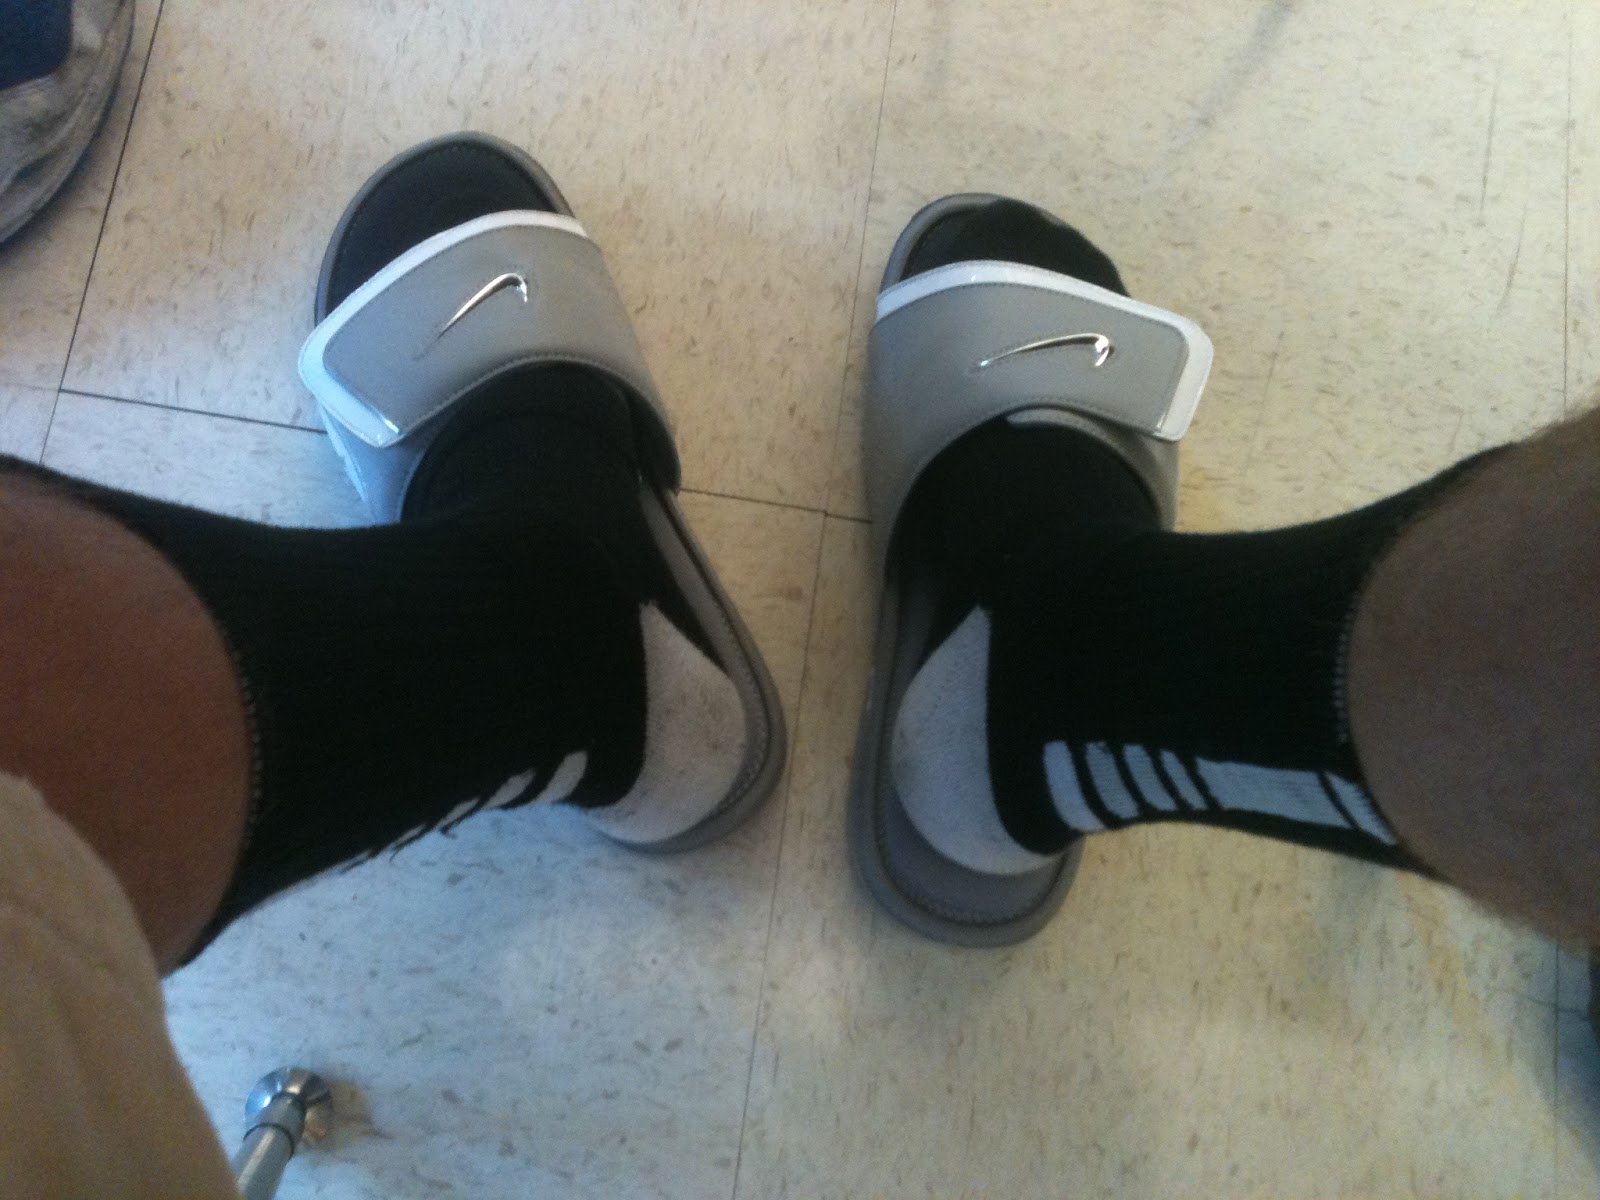 nike sandals and socks